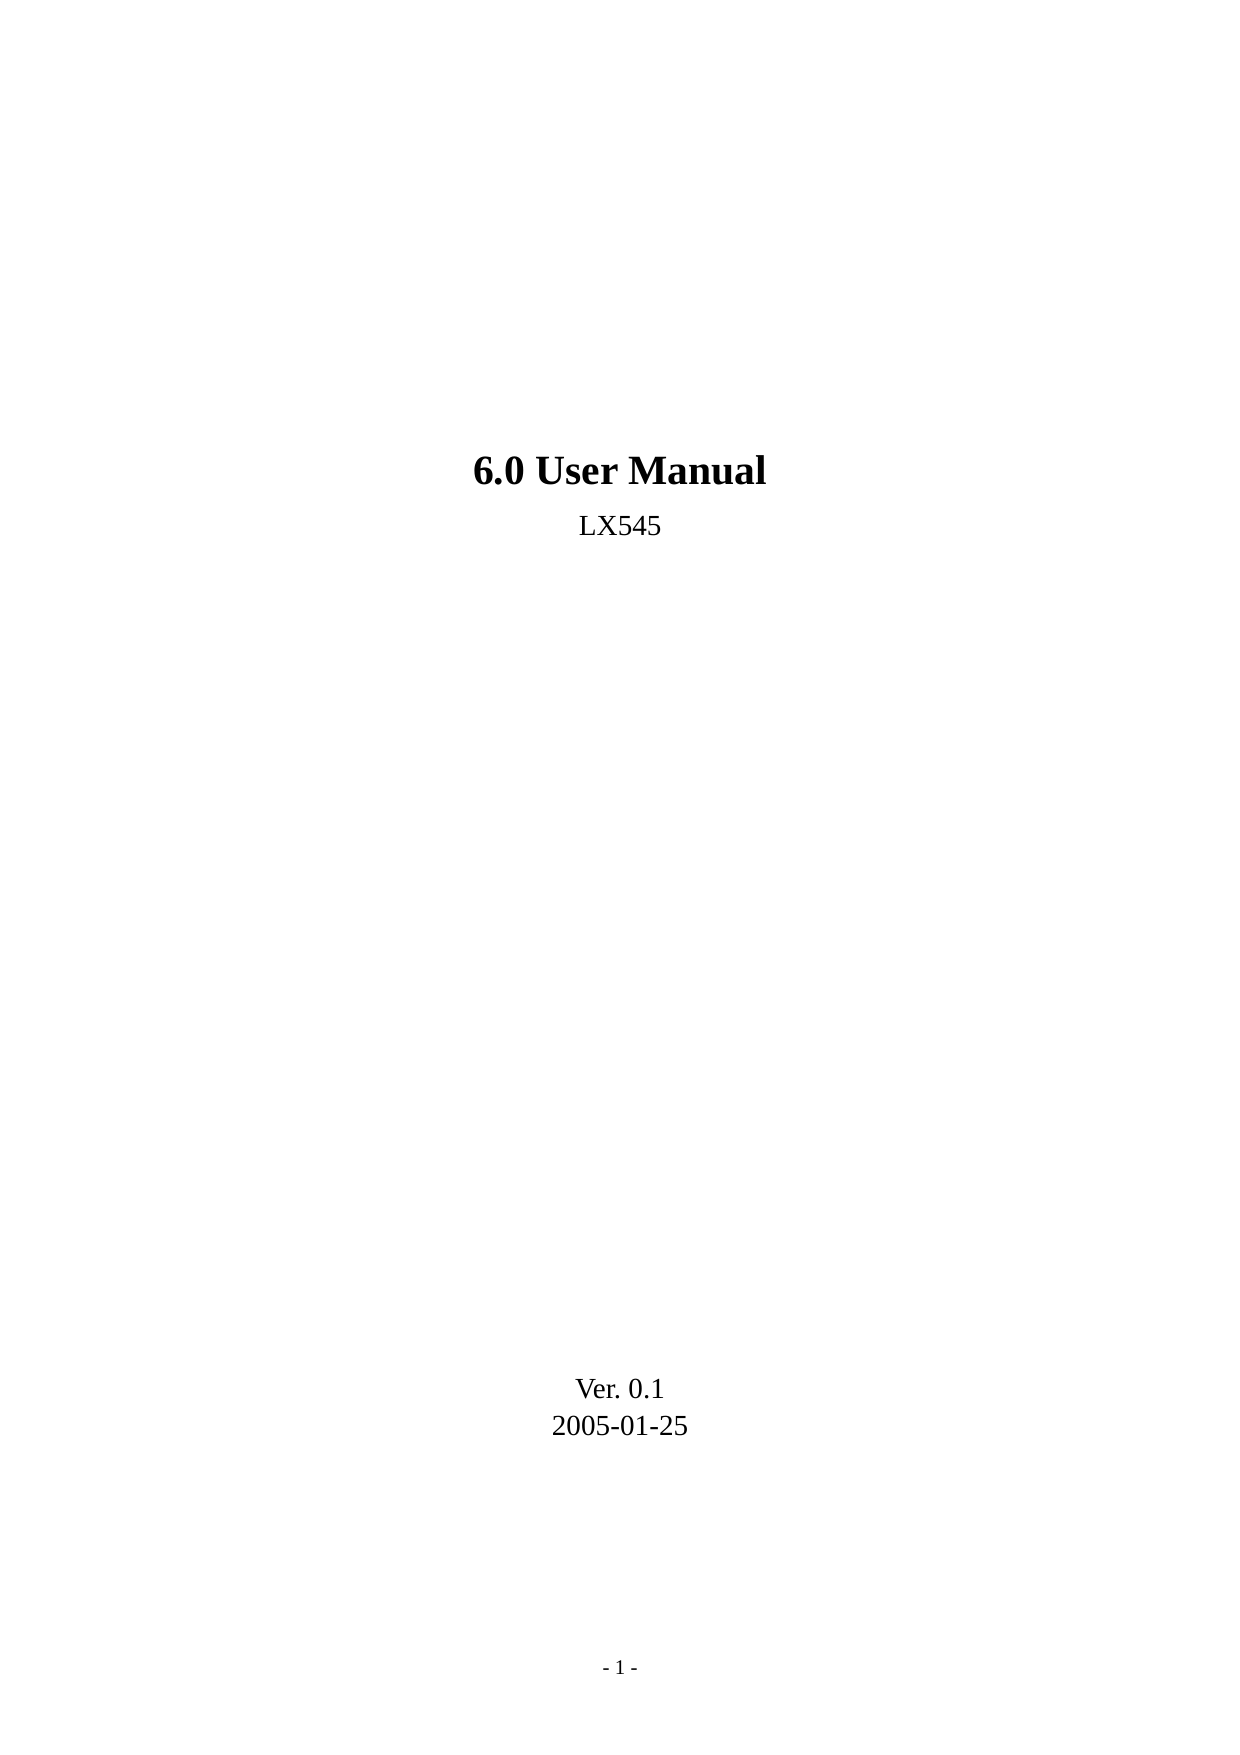    6.0 User Manual LX545                       Ver. 0.1 2005-01-25 - 1 - 